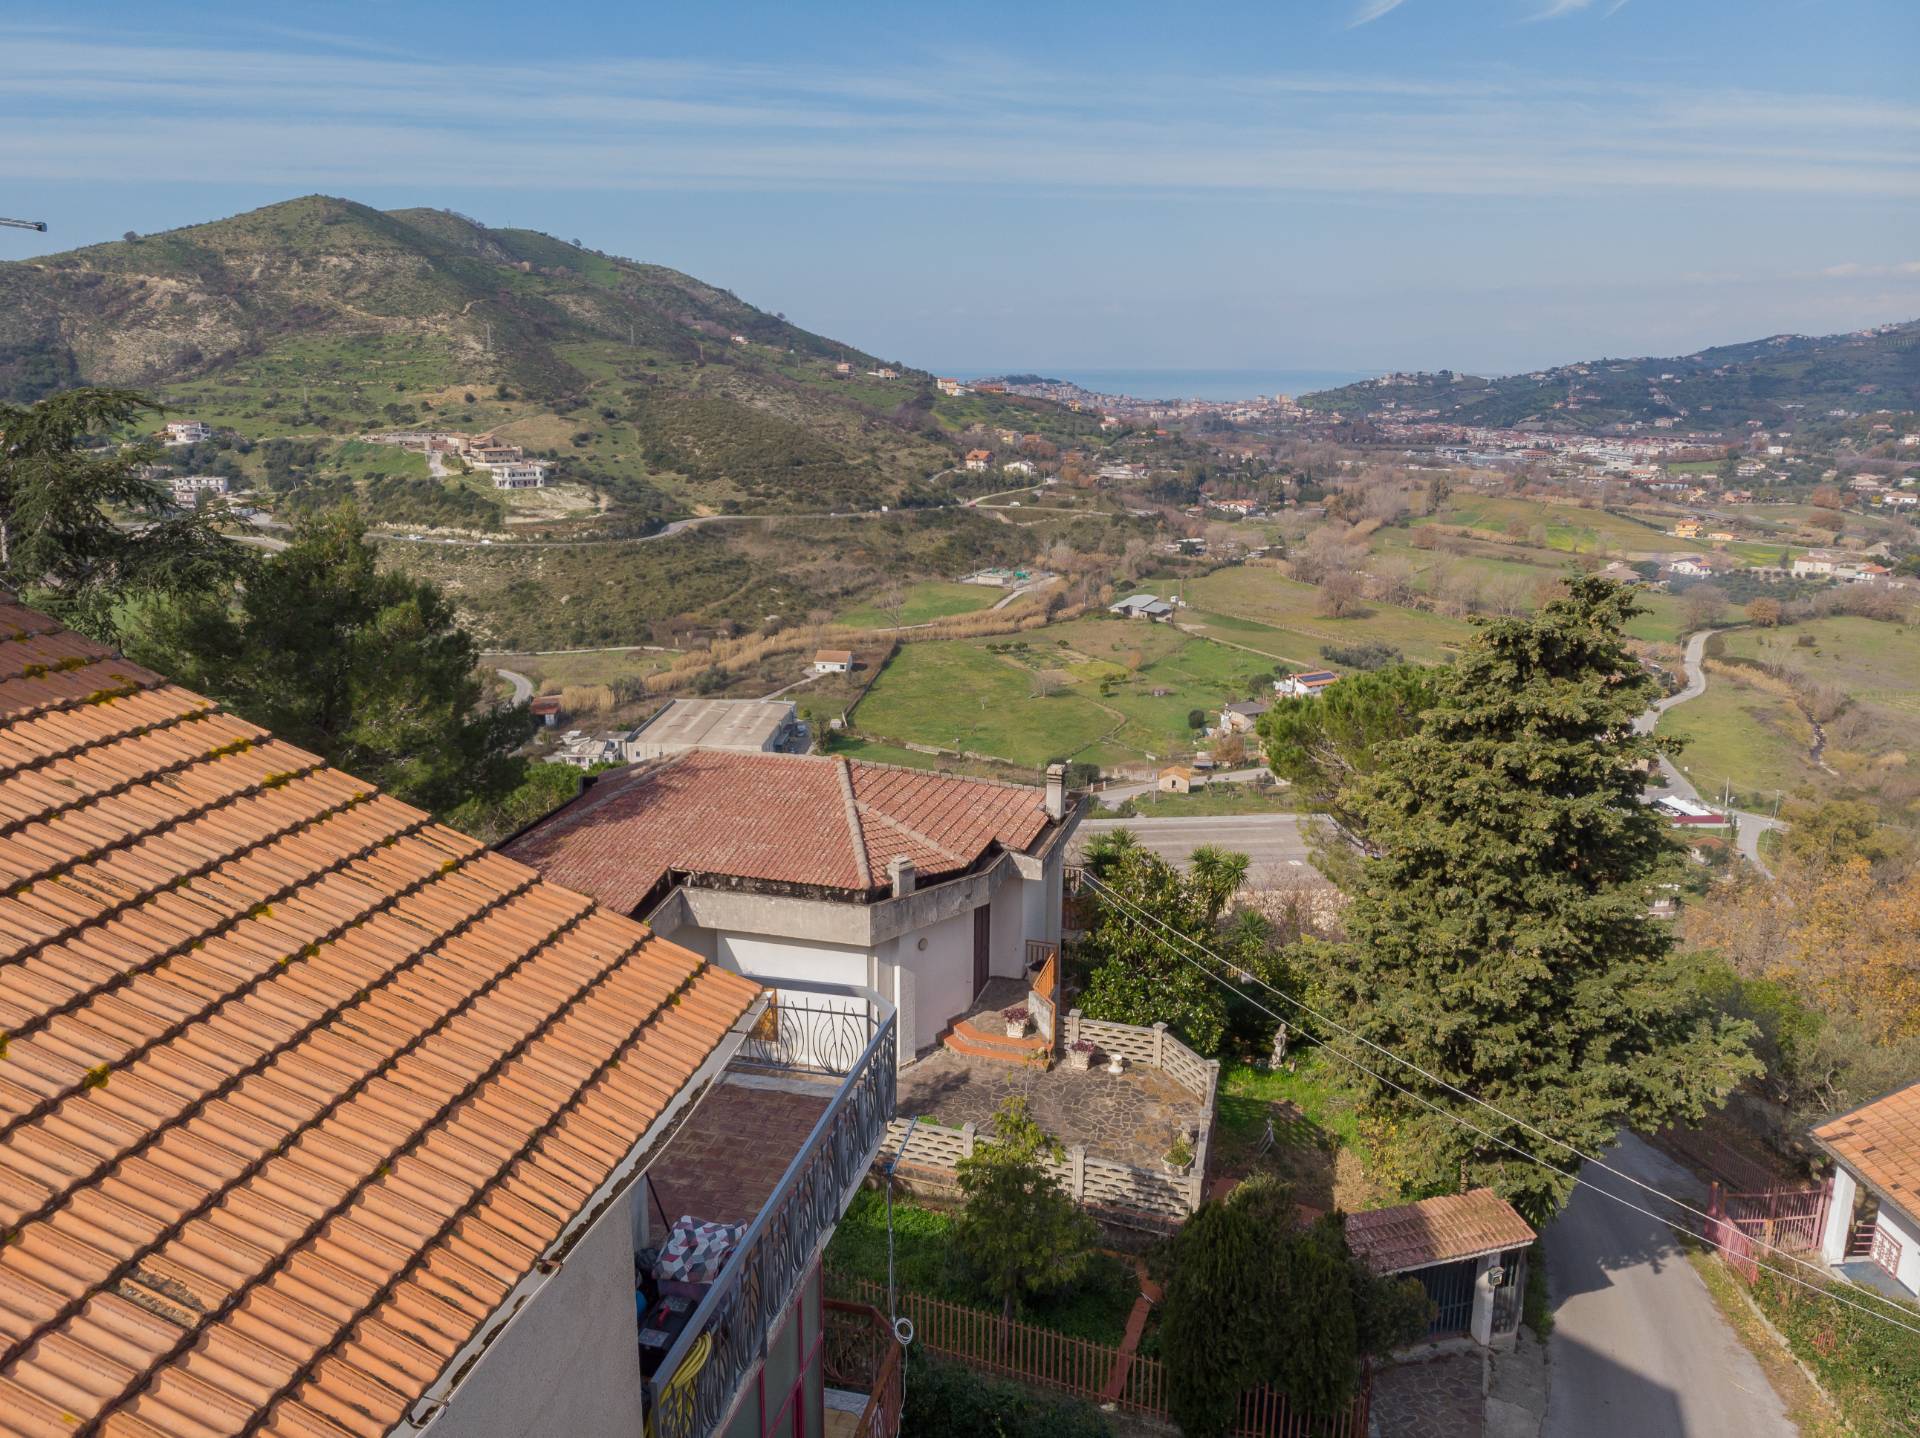 Appartamento in vendita a Laureana Cilento, 3 locali, prezzo € 145.000 | PortaleAgenzieImmobiliari.it